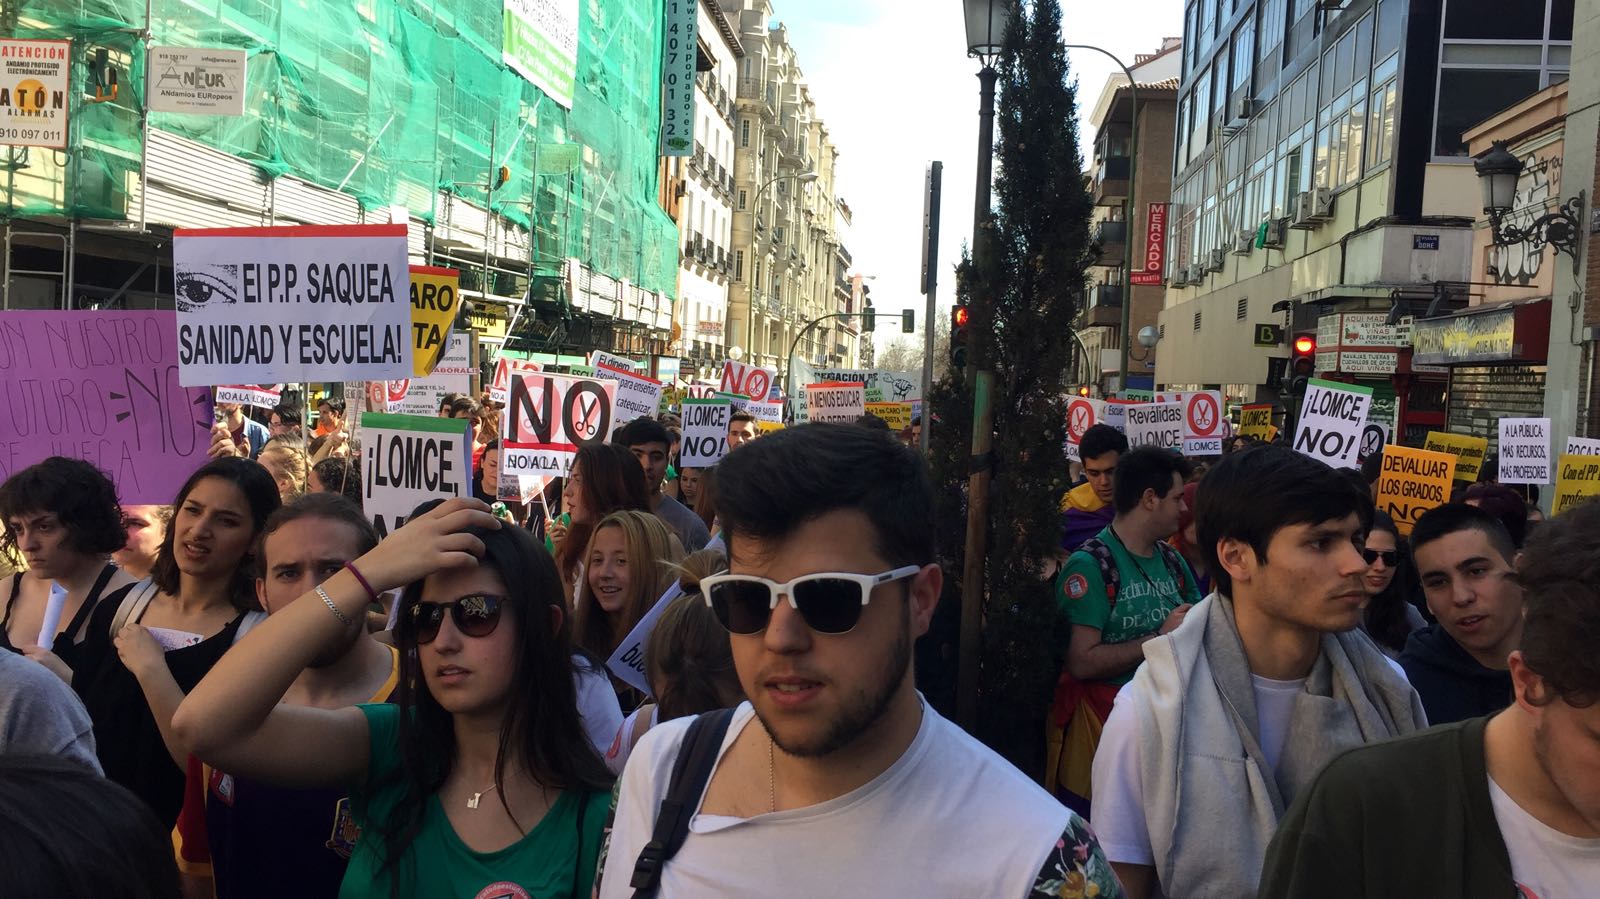 Manifestación en Madrid contra la LOMCE duante la jornada de huelga convocada en la Educación (Foto: elplural.com)